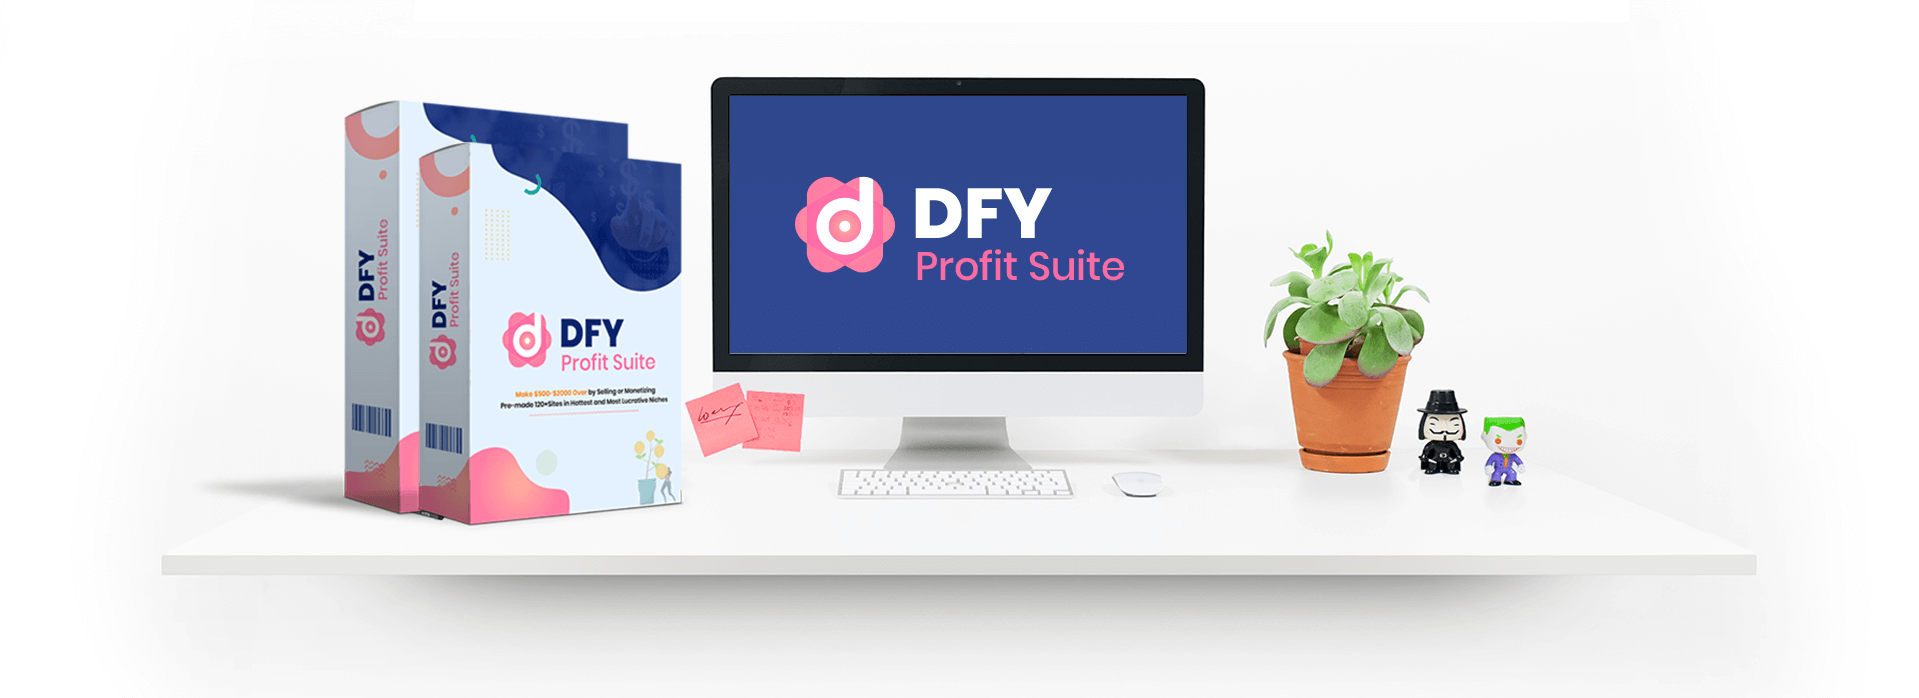 DFY Profit Suite OTOs